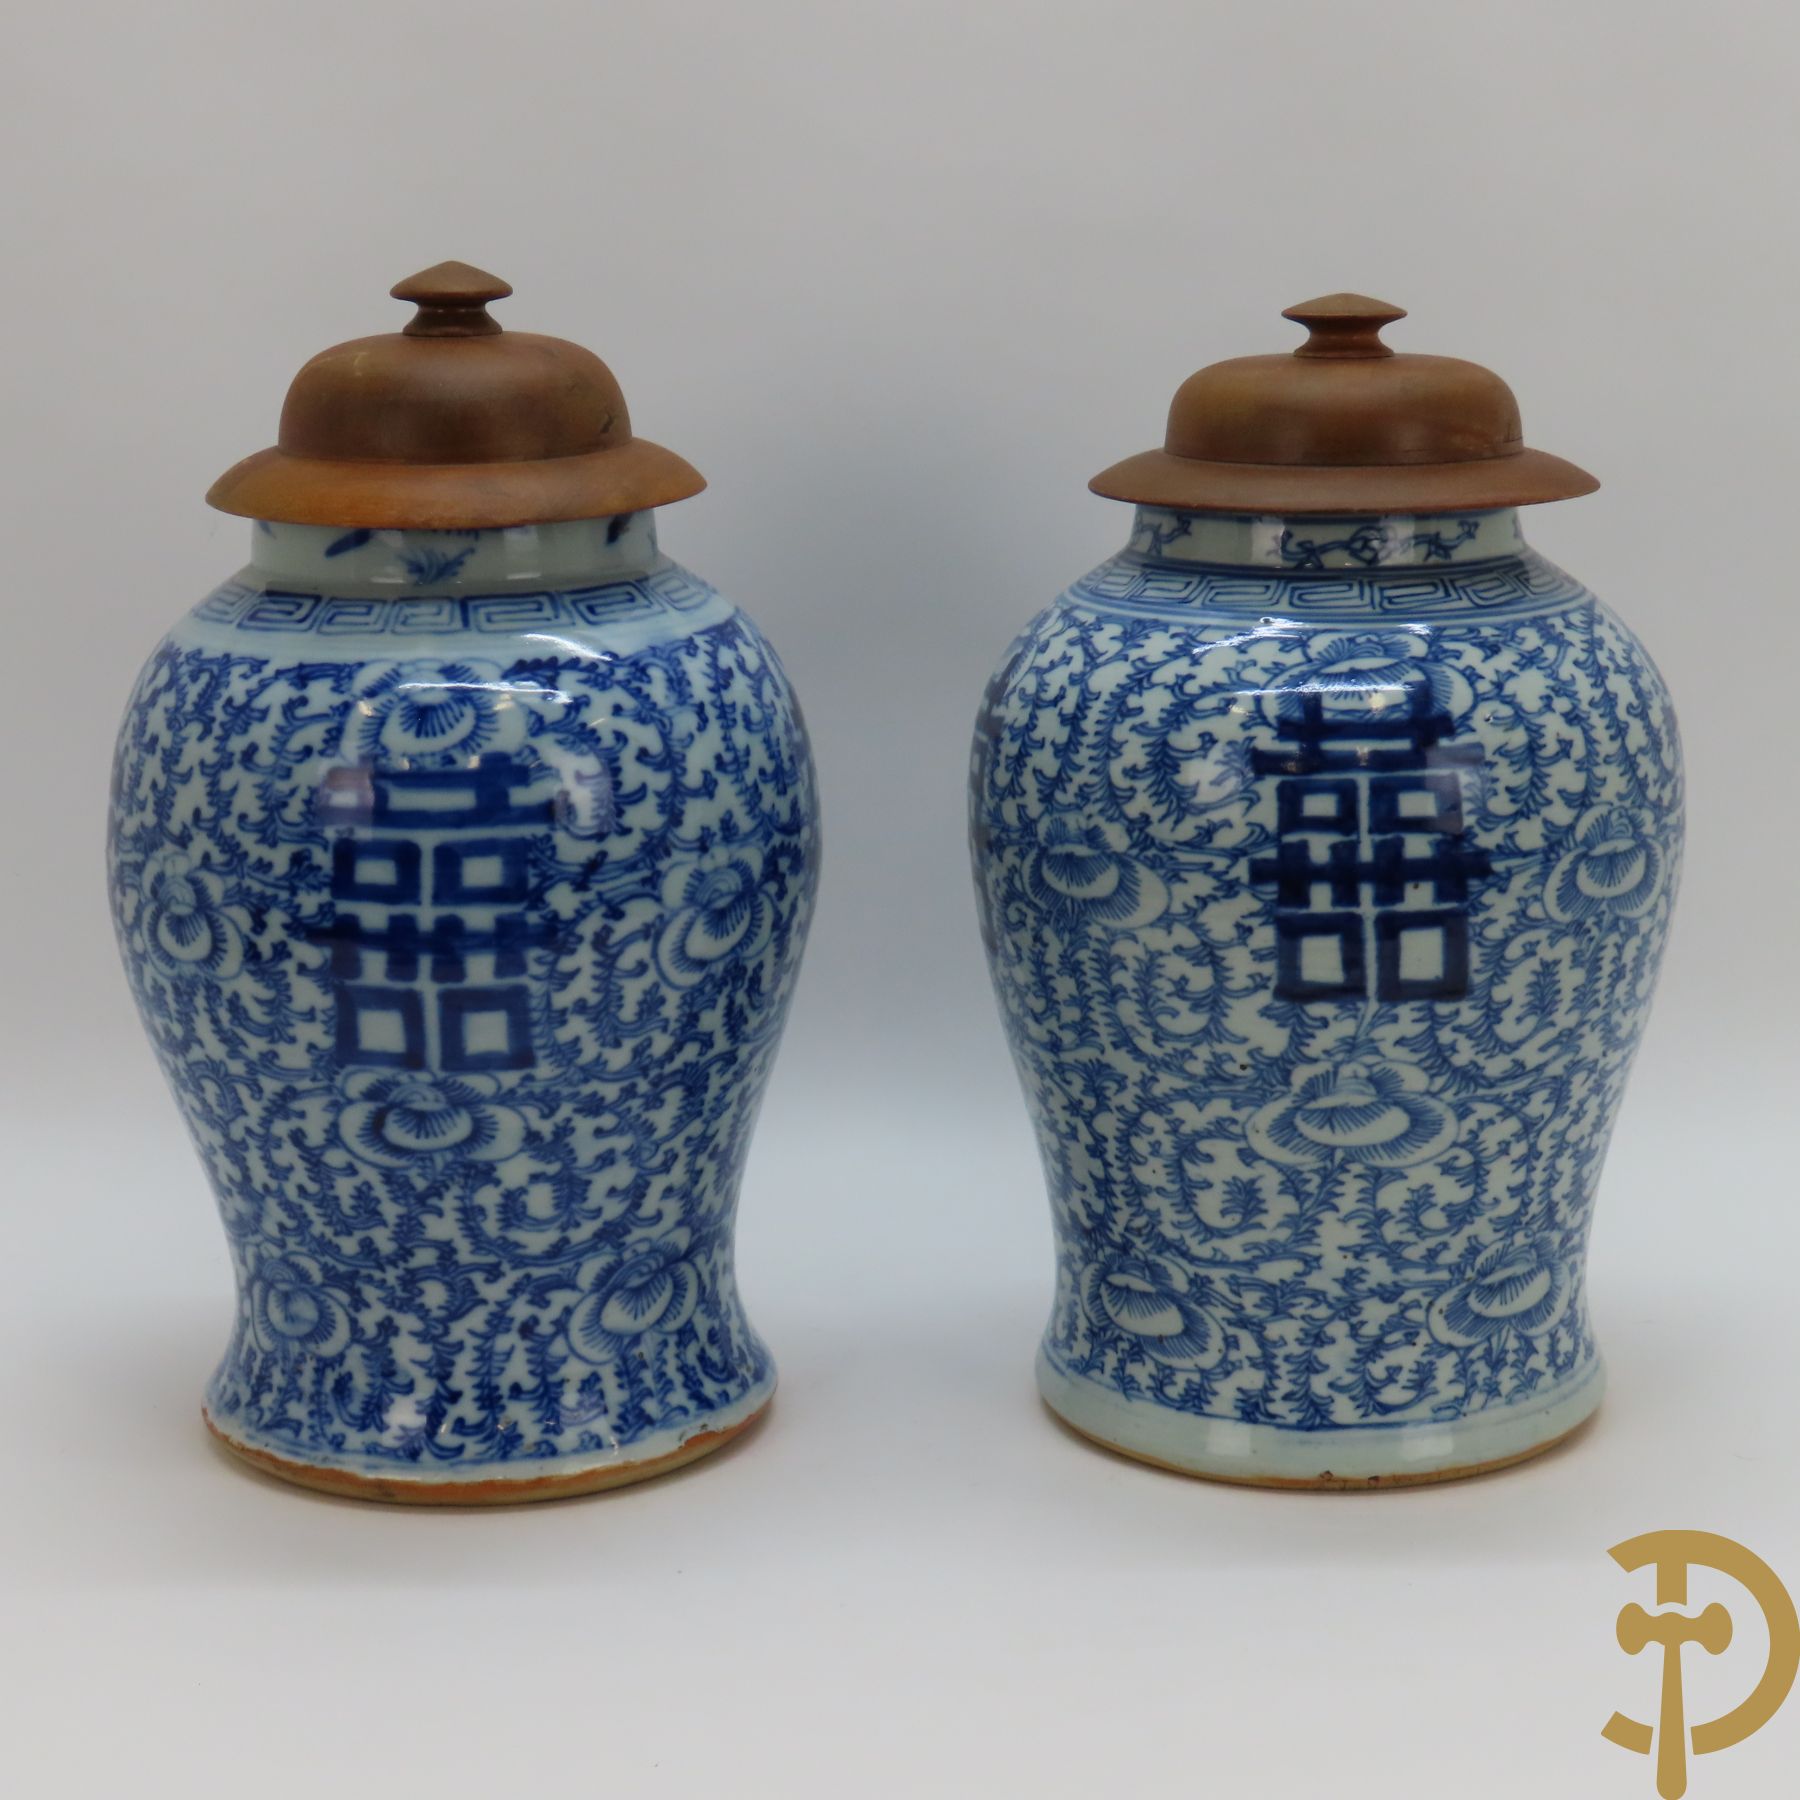 Paar Chinese porseleinen dekselpotiches met bloemen-, accanthusranken en Chinese tekens in blauw/wit decor met houten deksels